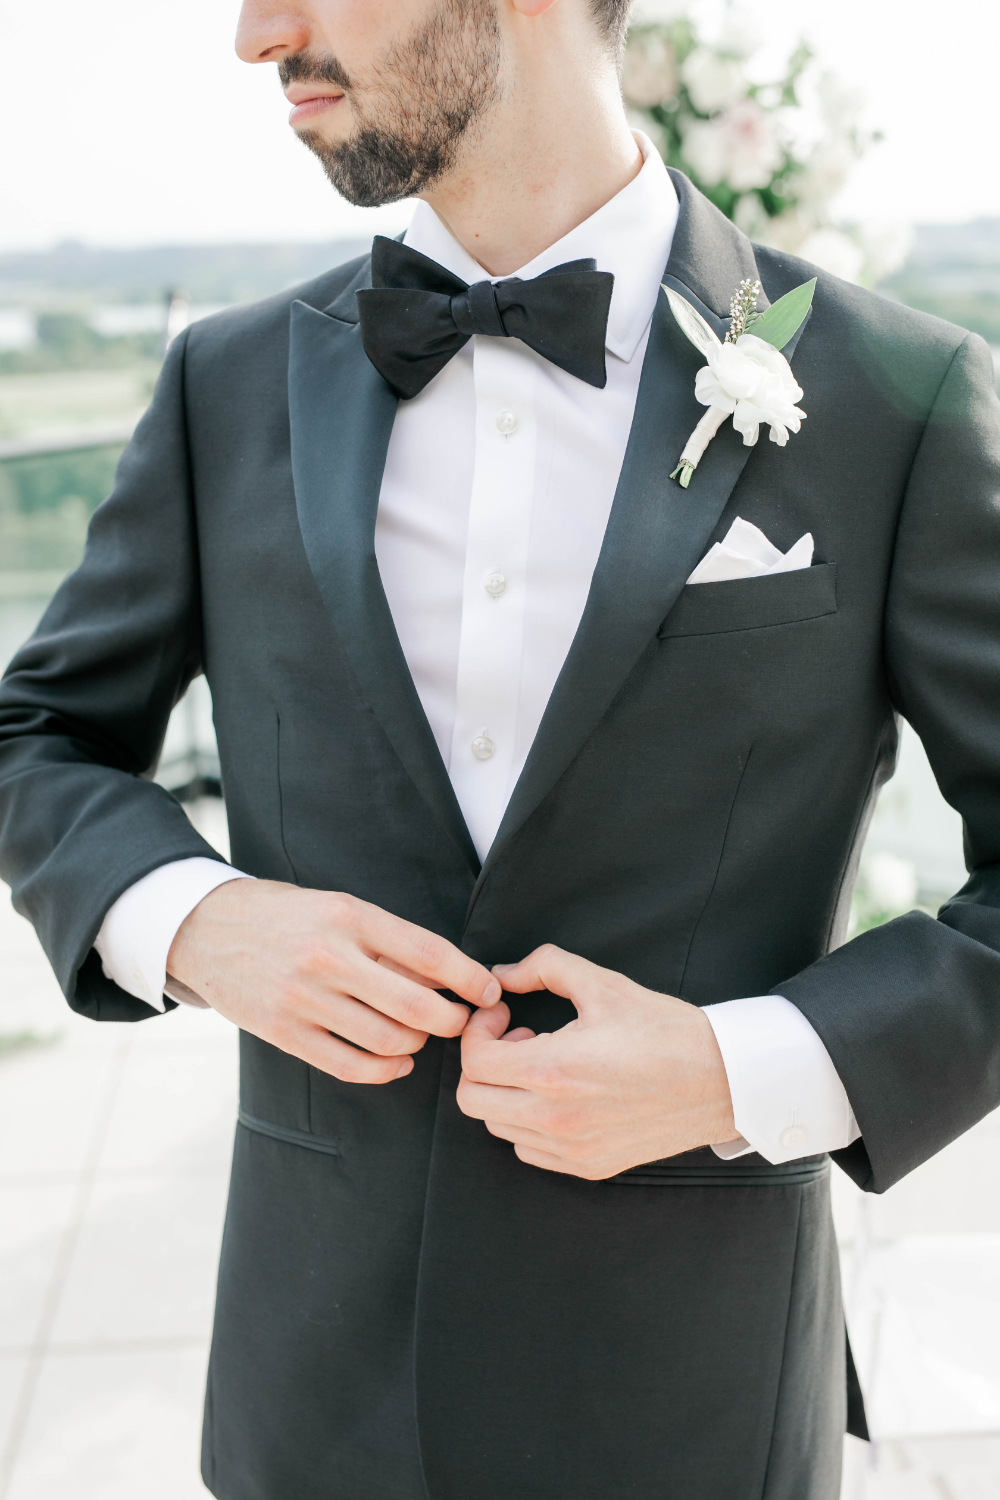 groom puts on his tuxedo